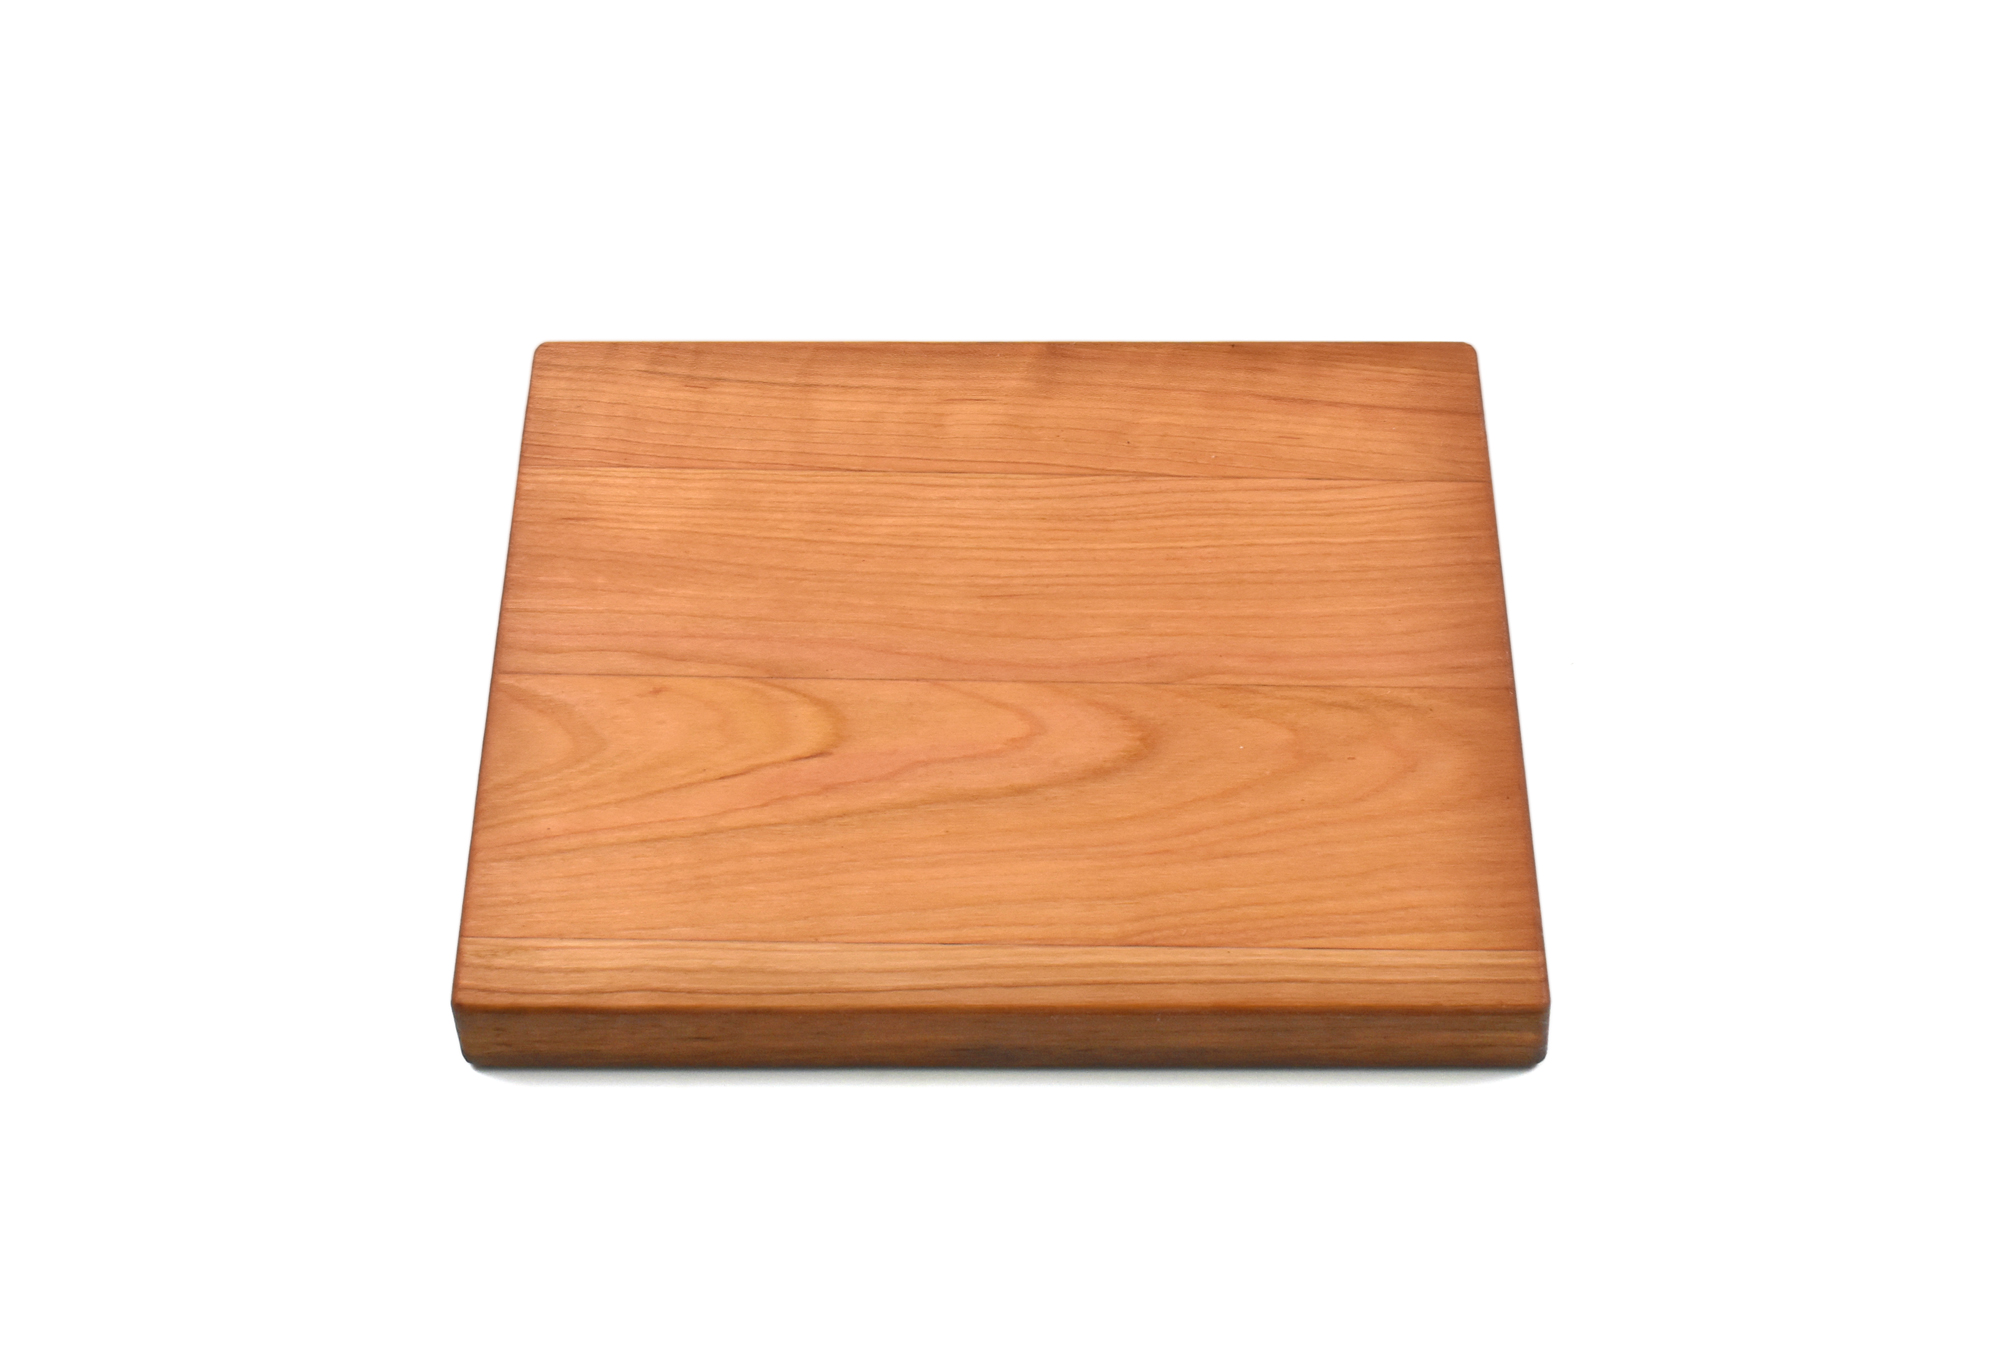 Mini Wood Cutting Board